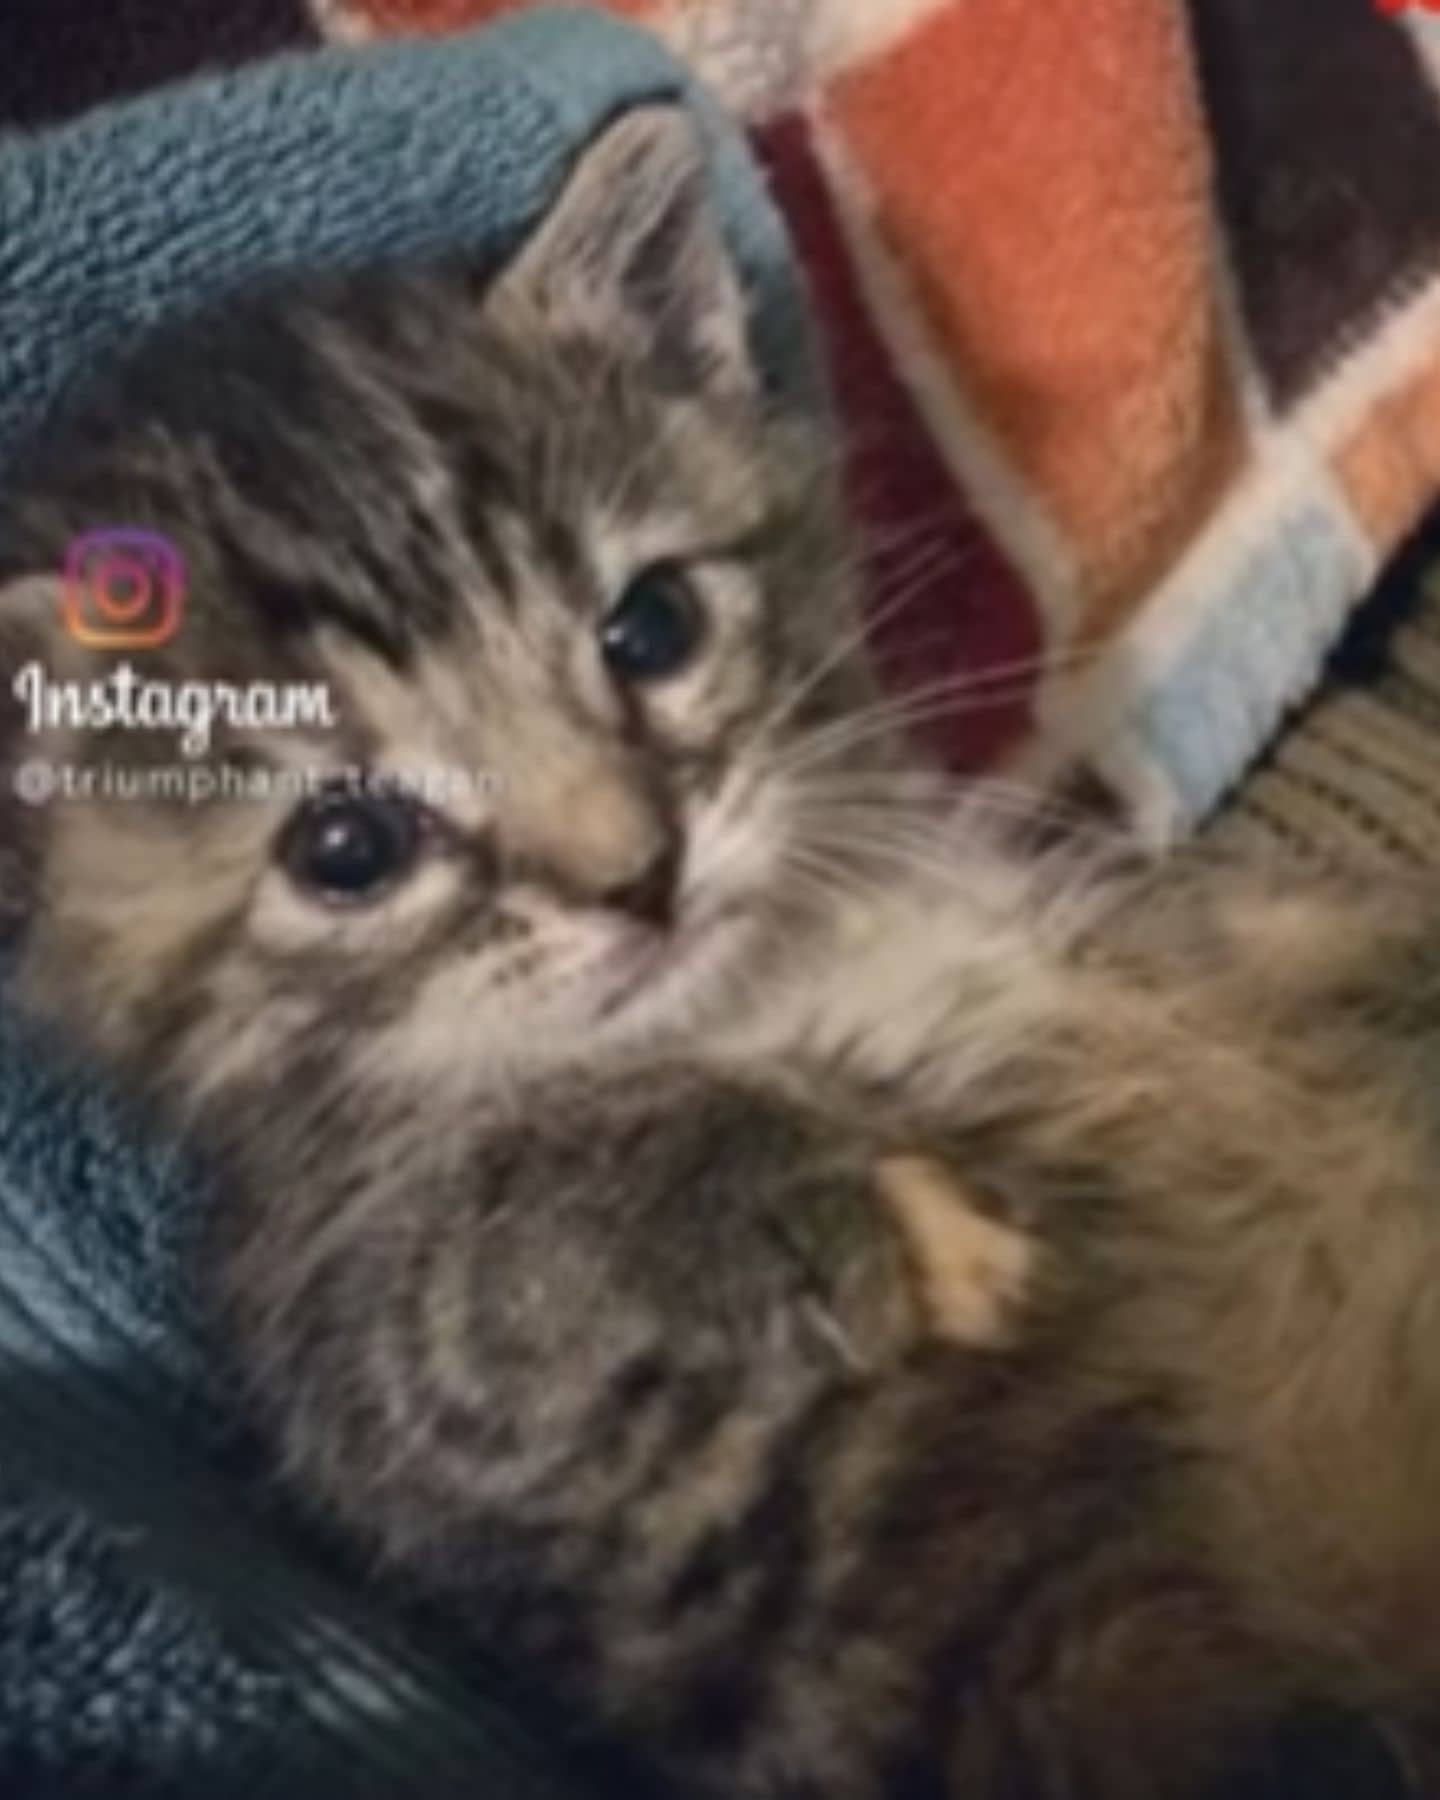 instagram post of a kitten